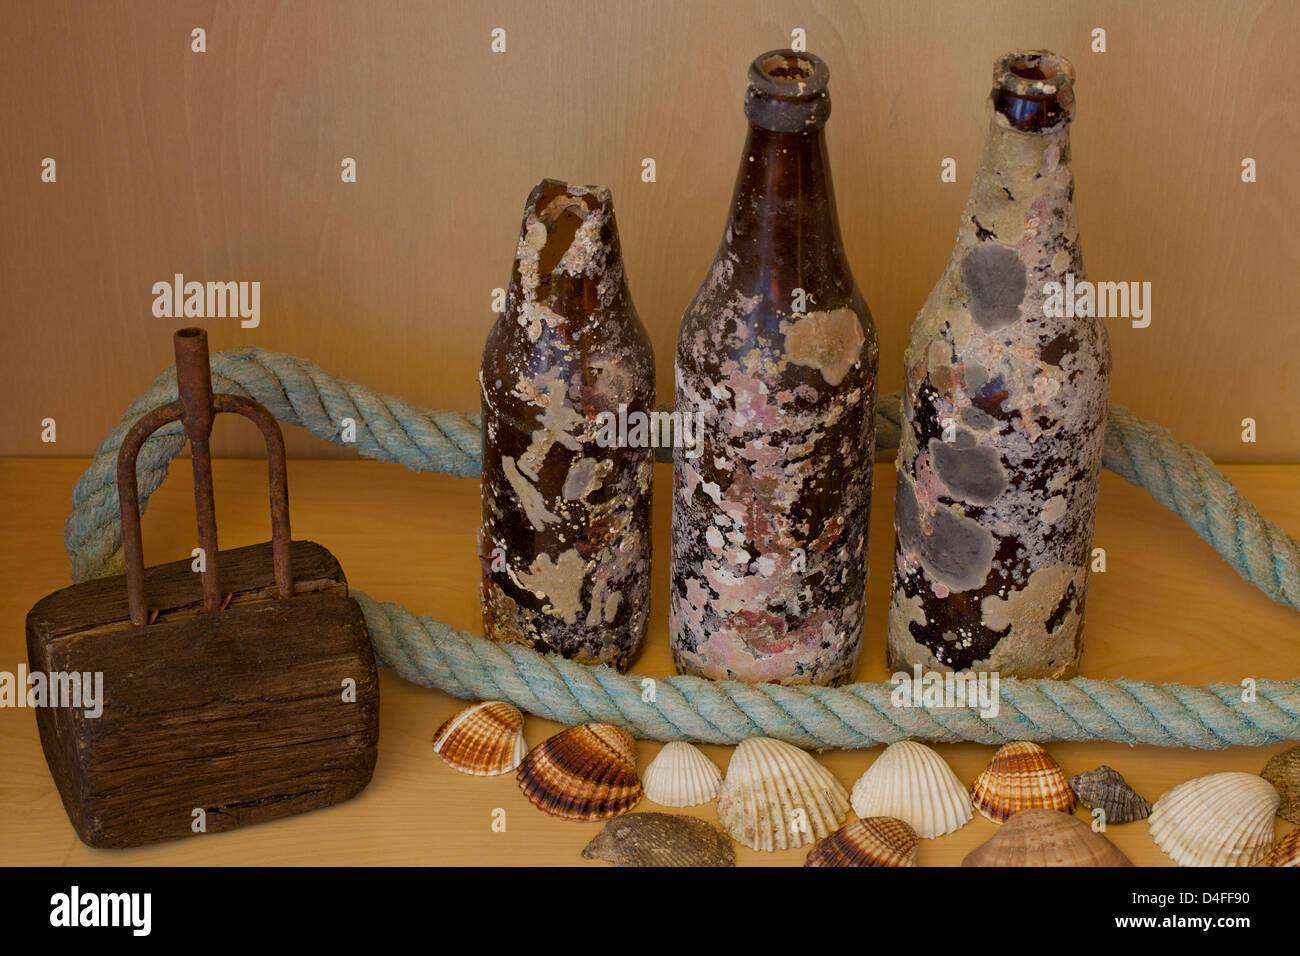 Treibholz, Harpune, Seil, Bierflaschen, die am Meeresboden und Muscheln gefunden Stockfoto